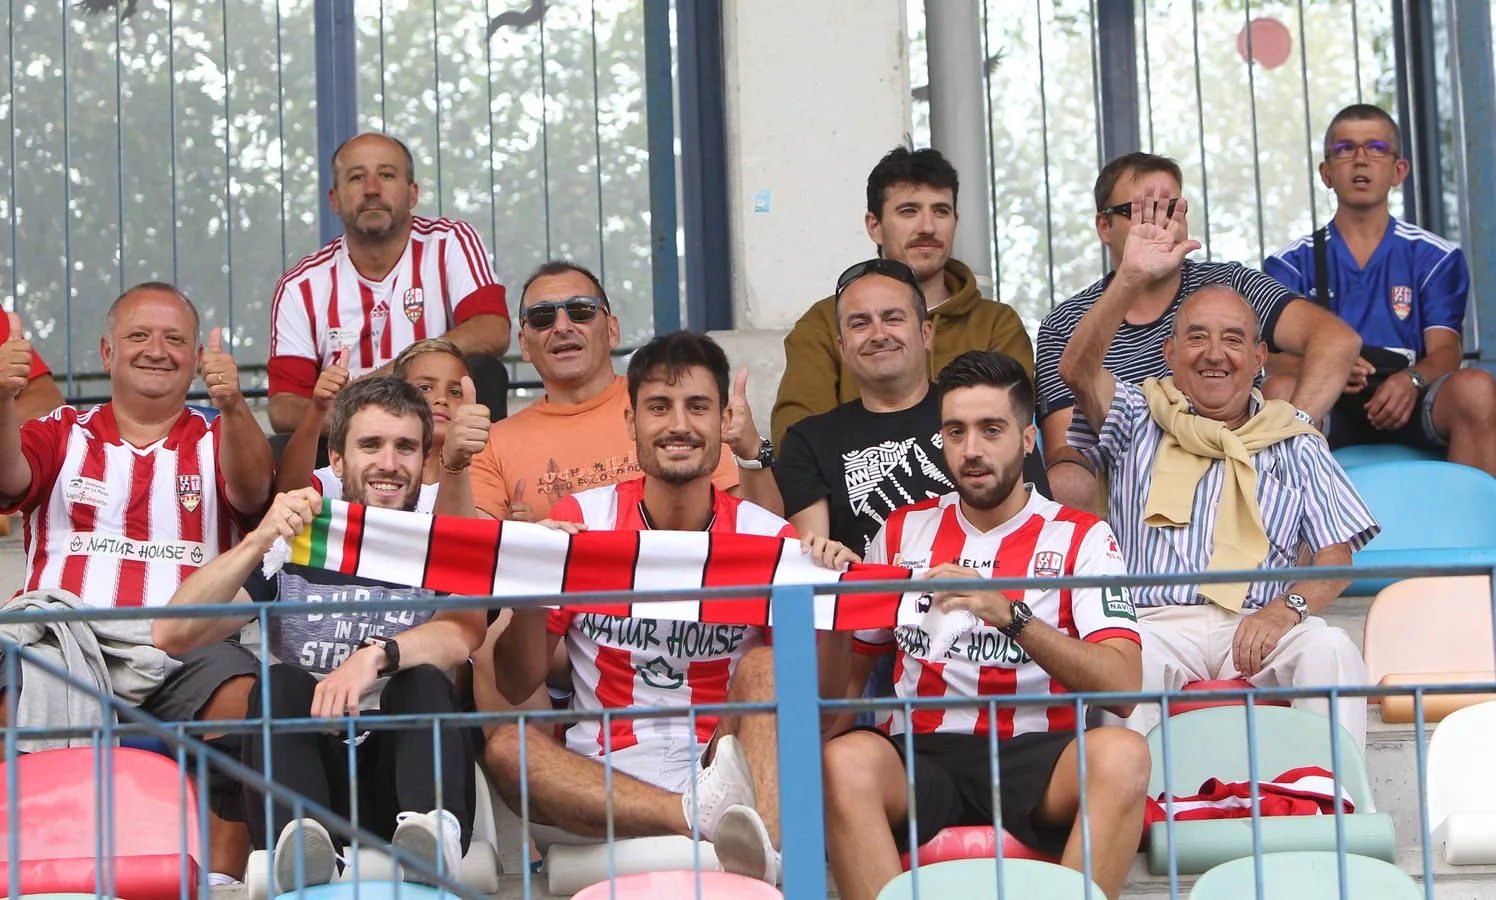 Las imágenes del empate entre Durango y UD Logroñés en la primera jornada de la liga 2018-19